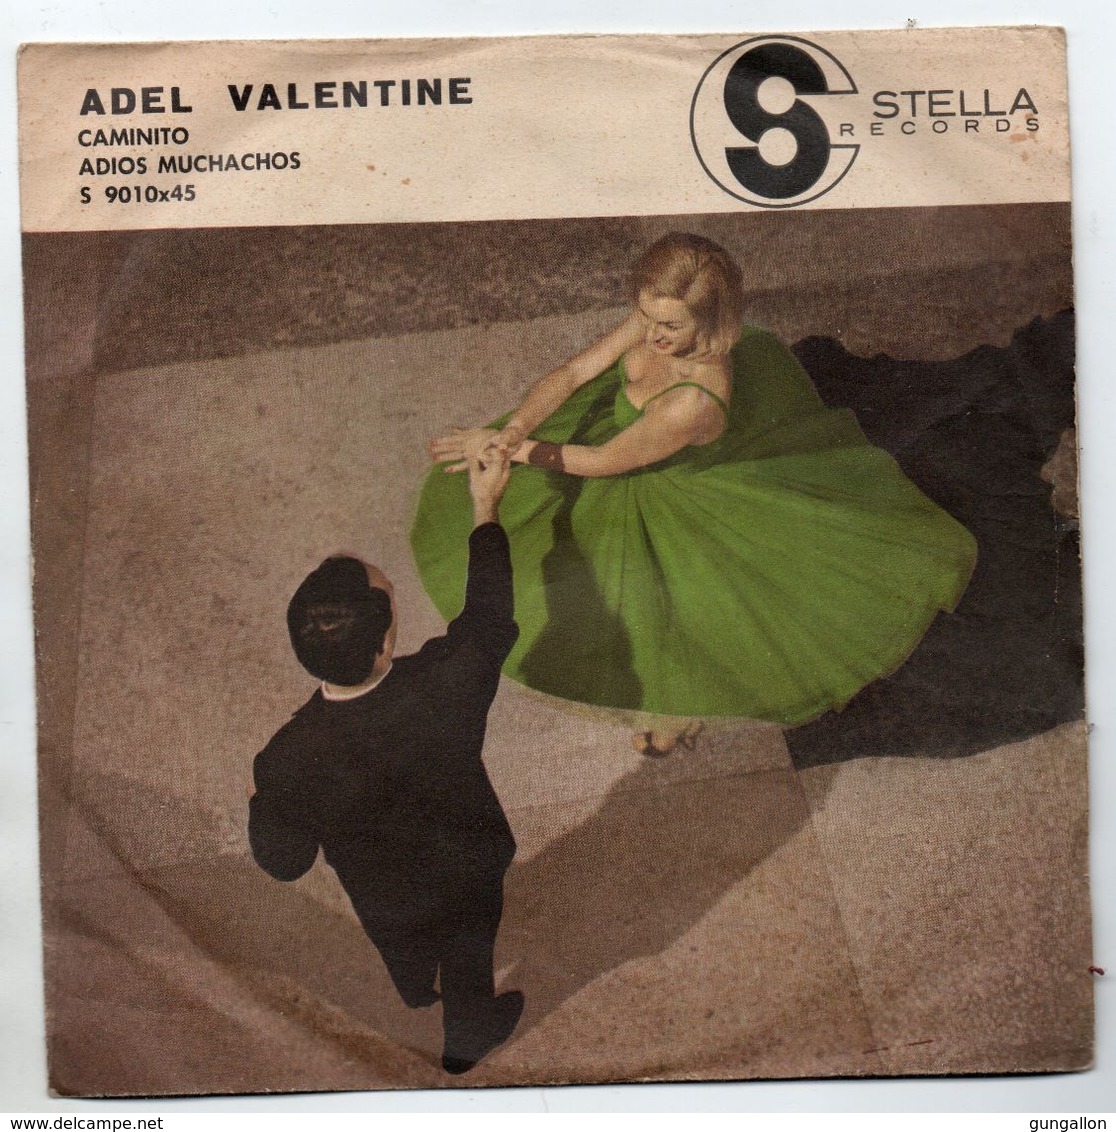 Adel Valentine (1960)  "Caminito  -  Adios Muchachos" - Instrumentaal